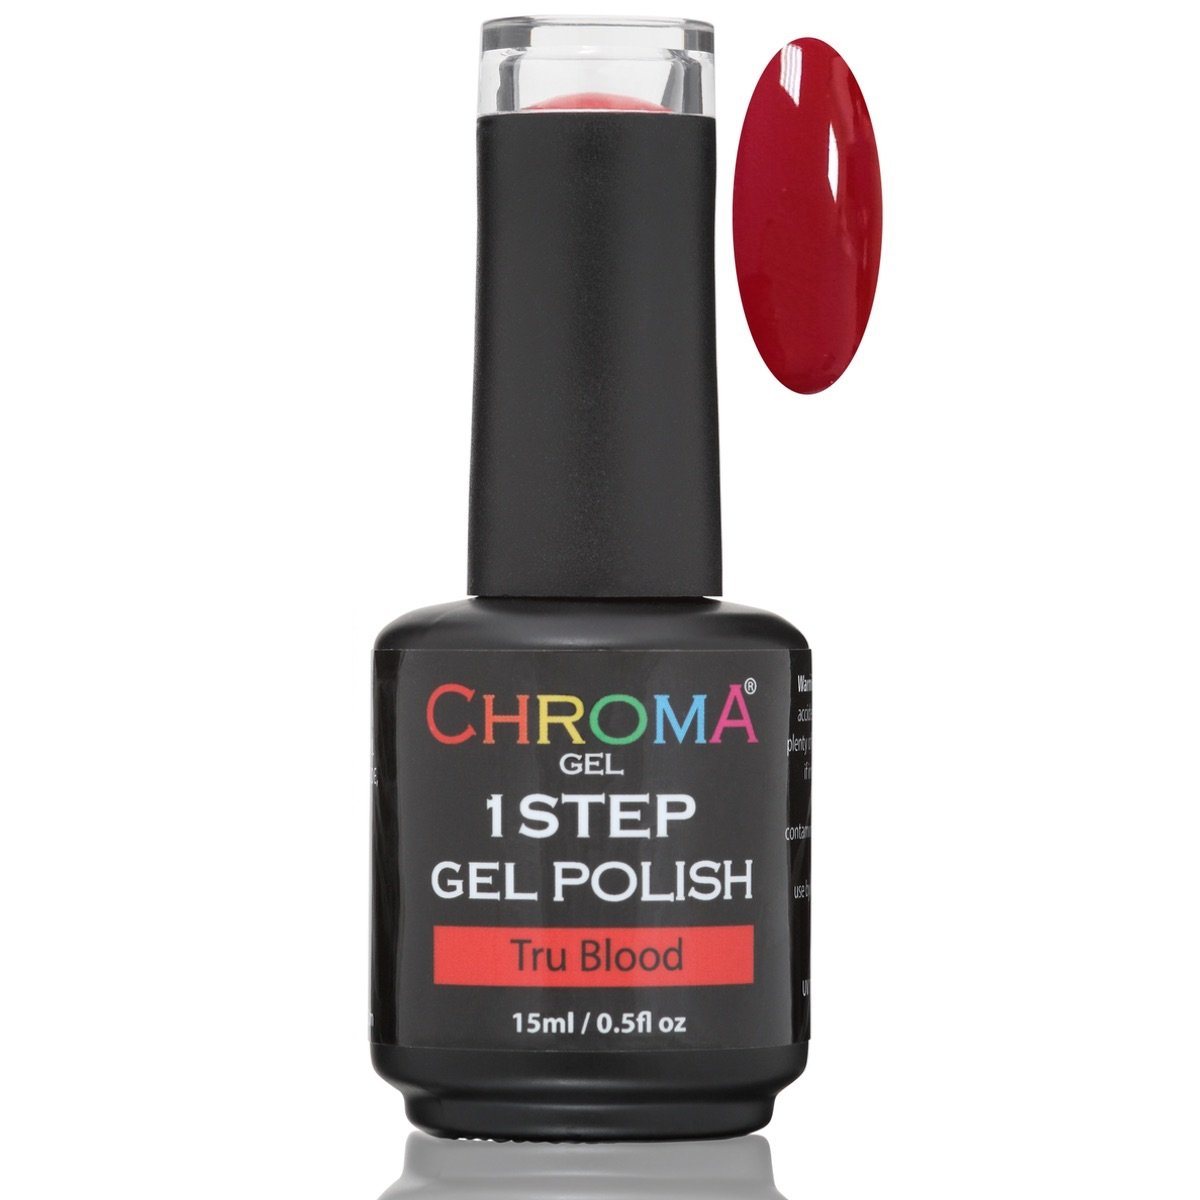 Chroma Gel 1 Step Gel Polish Tru Blood No.27 - Beauty Hair Products LtdChroma Gel